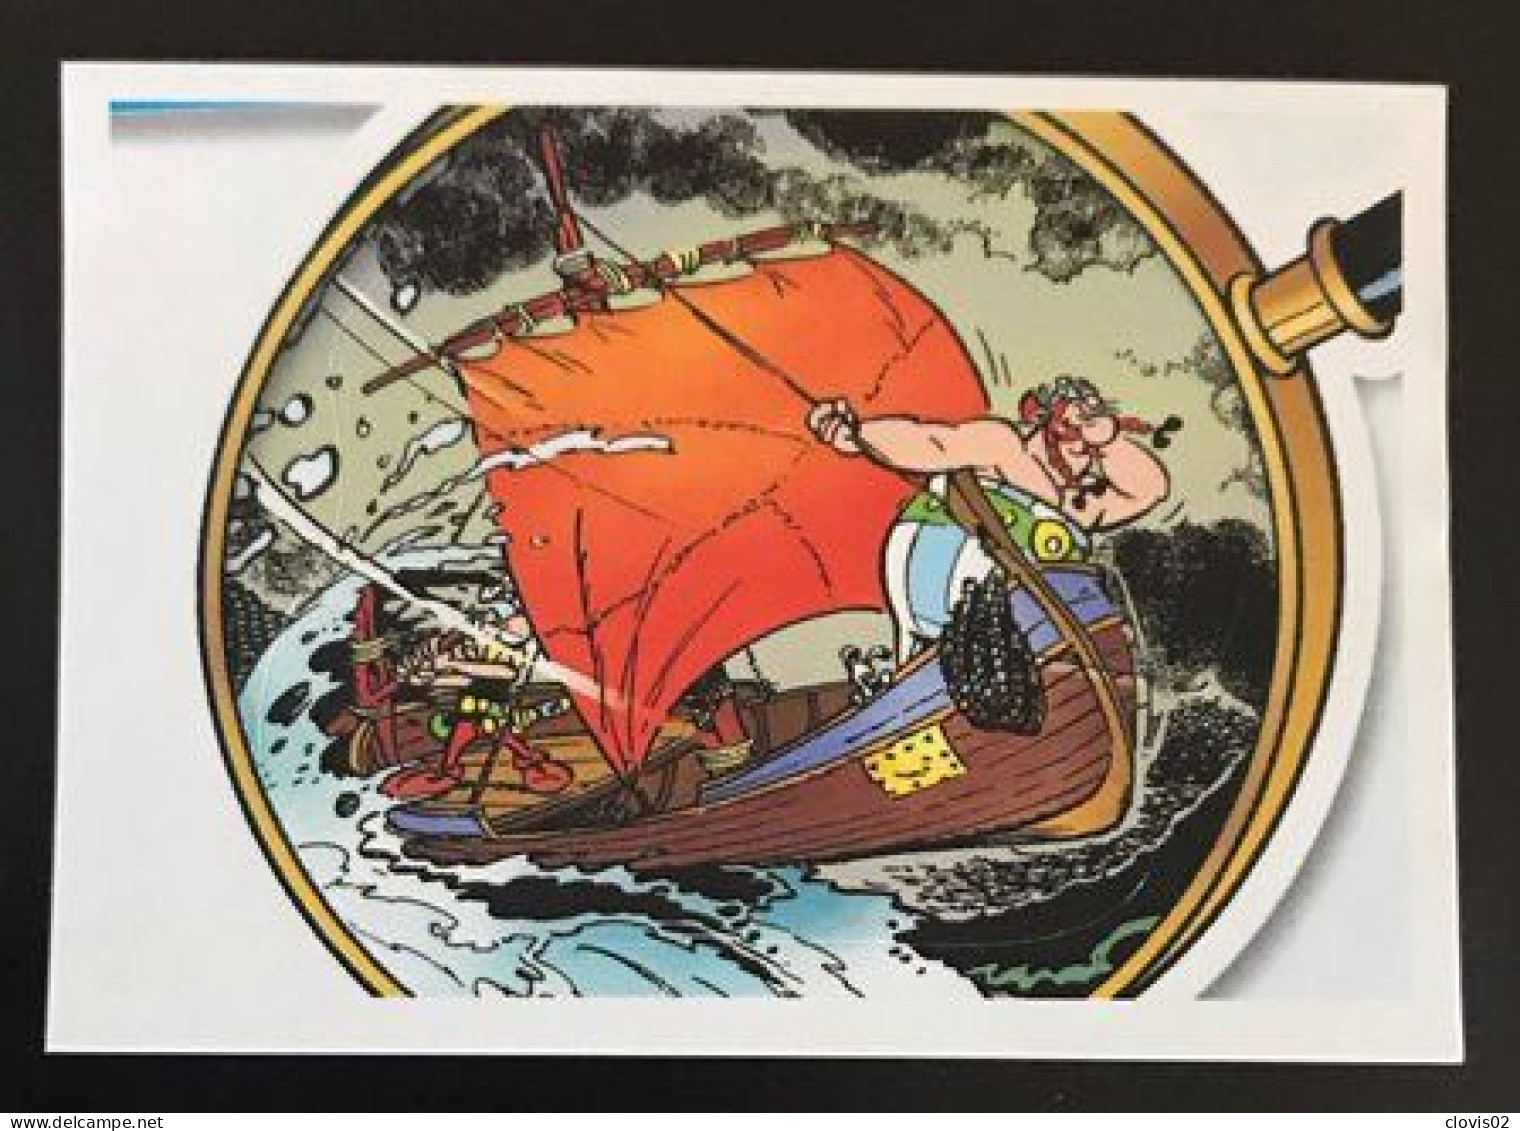 101 - PANINI Family Astérix 60 Ans D'aventures - Carrefour Sticker Vignette - Edition Française